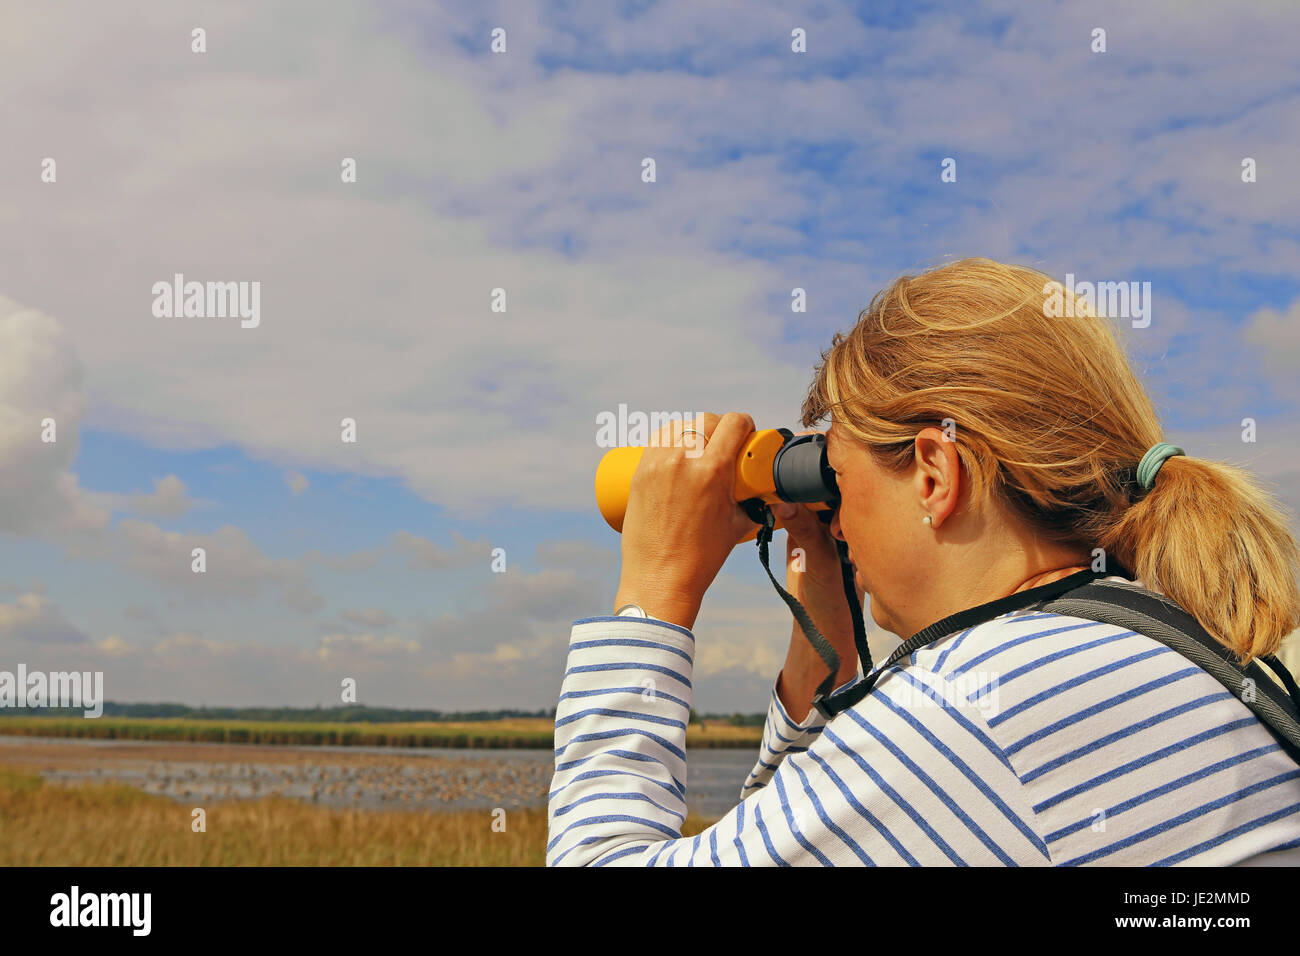 birdwatching beside a lake Stock Photo